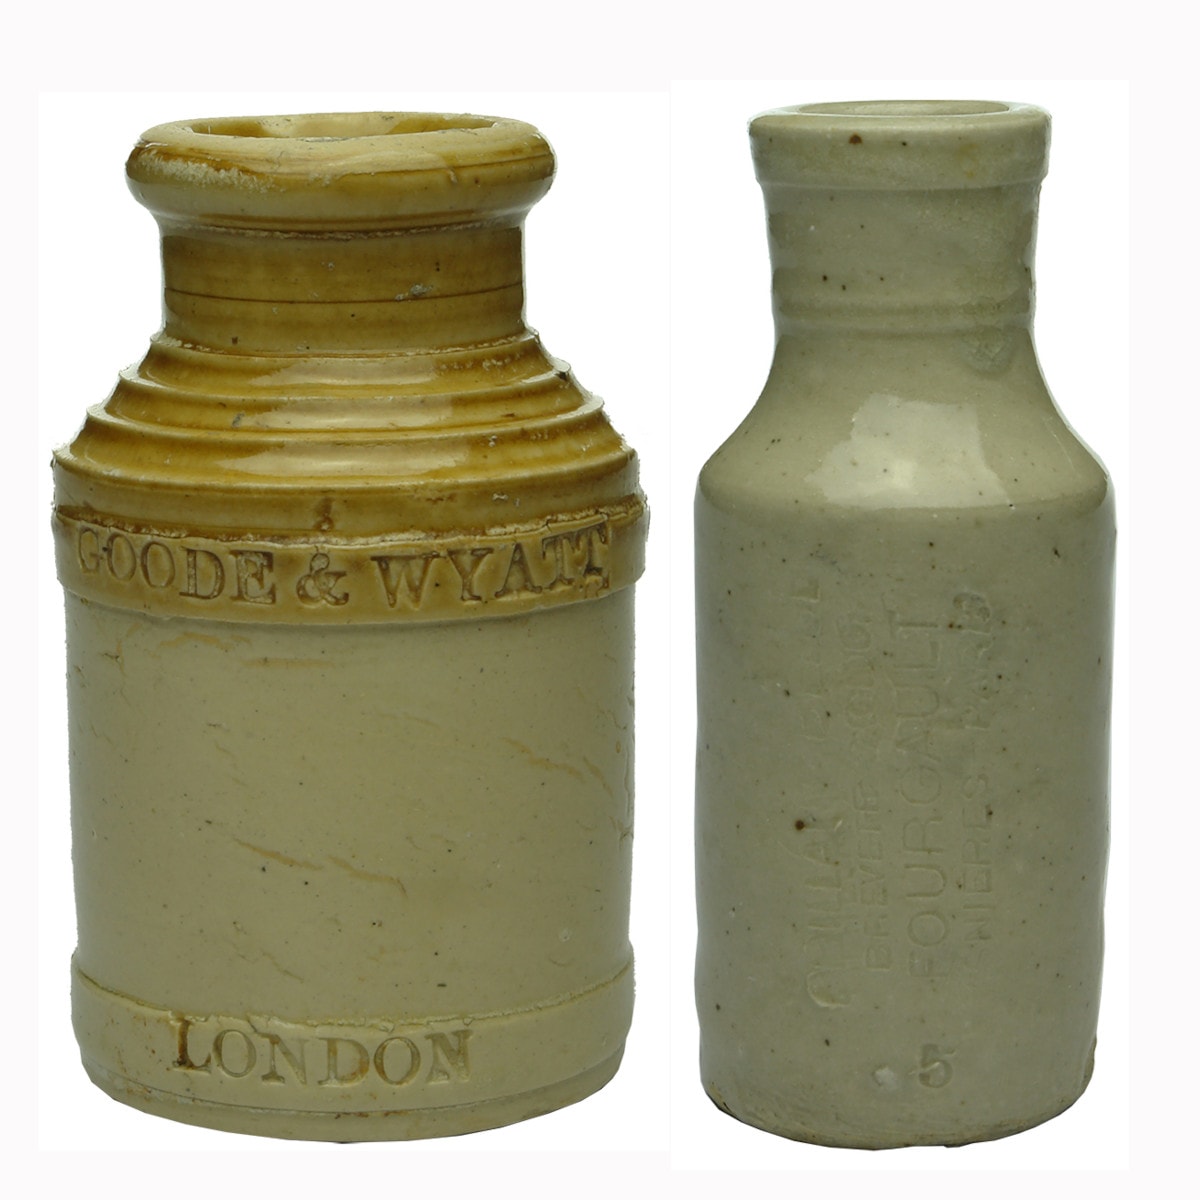 Pair of Stoneware Jars: Goode & Wyatt, London; French Blacking Jar.